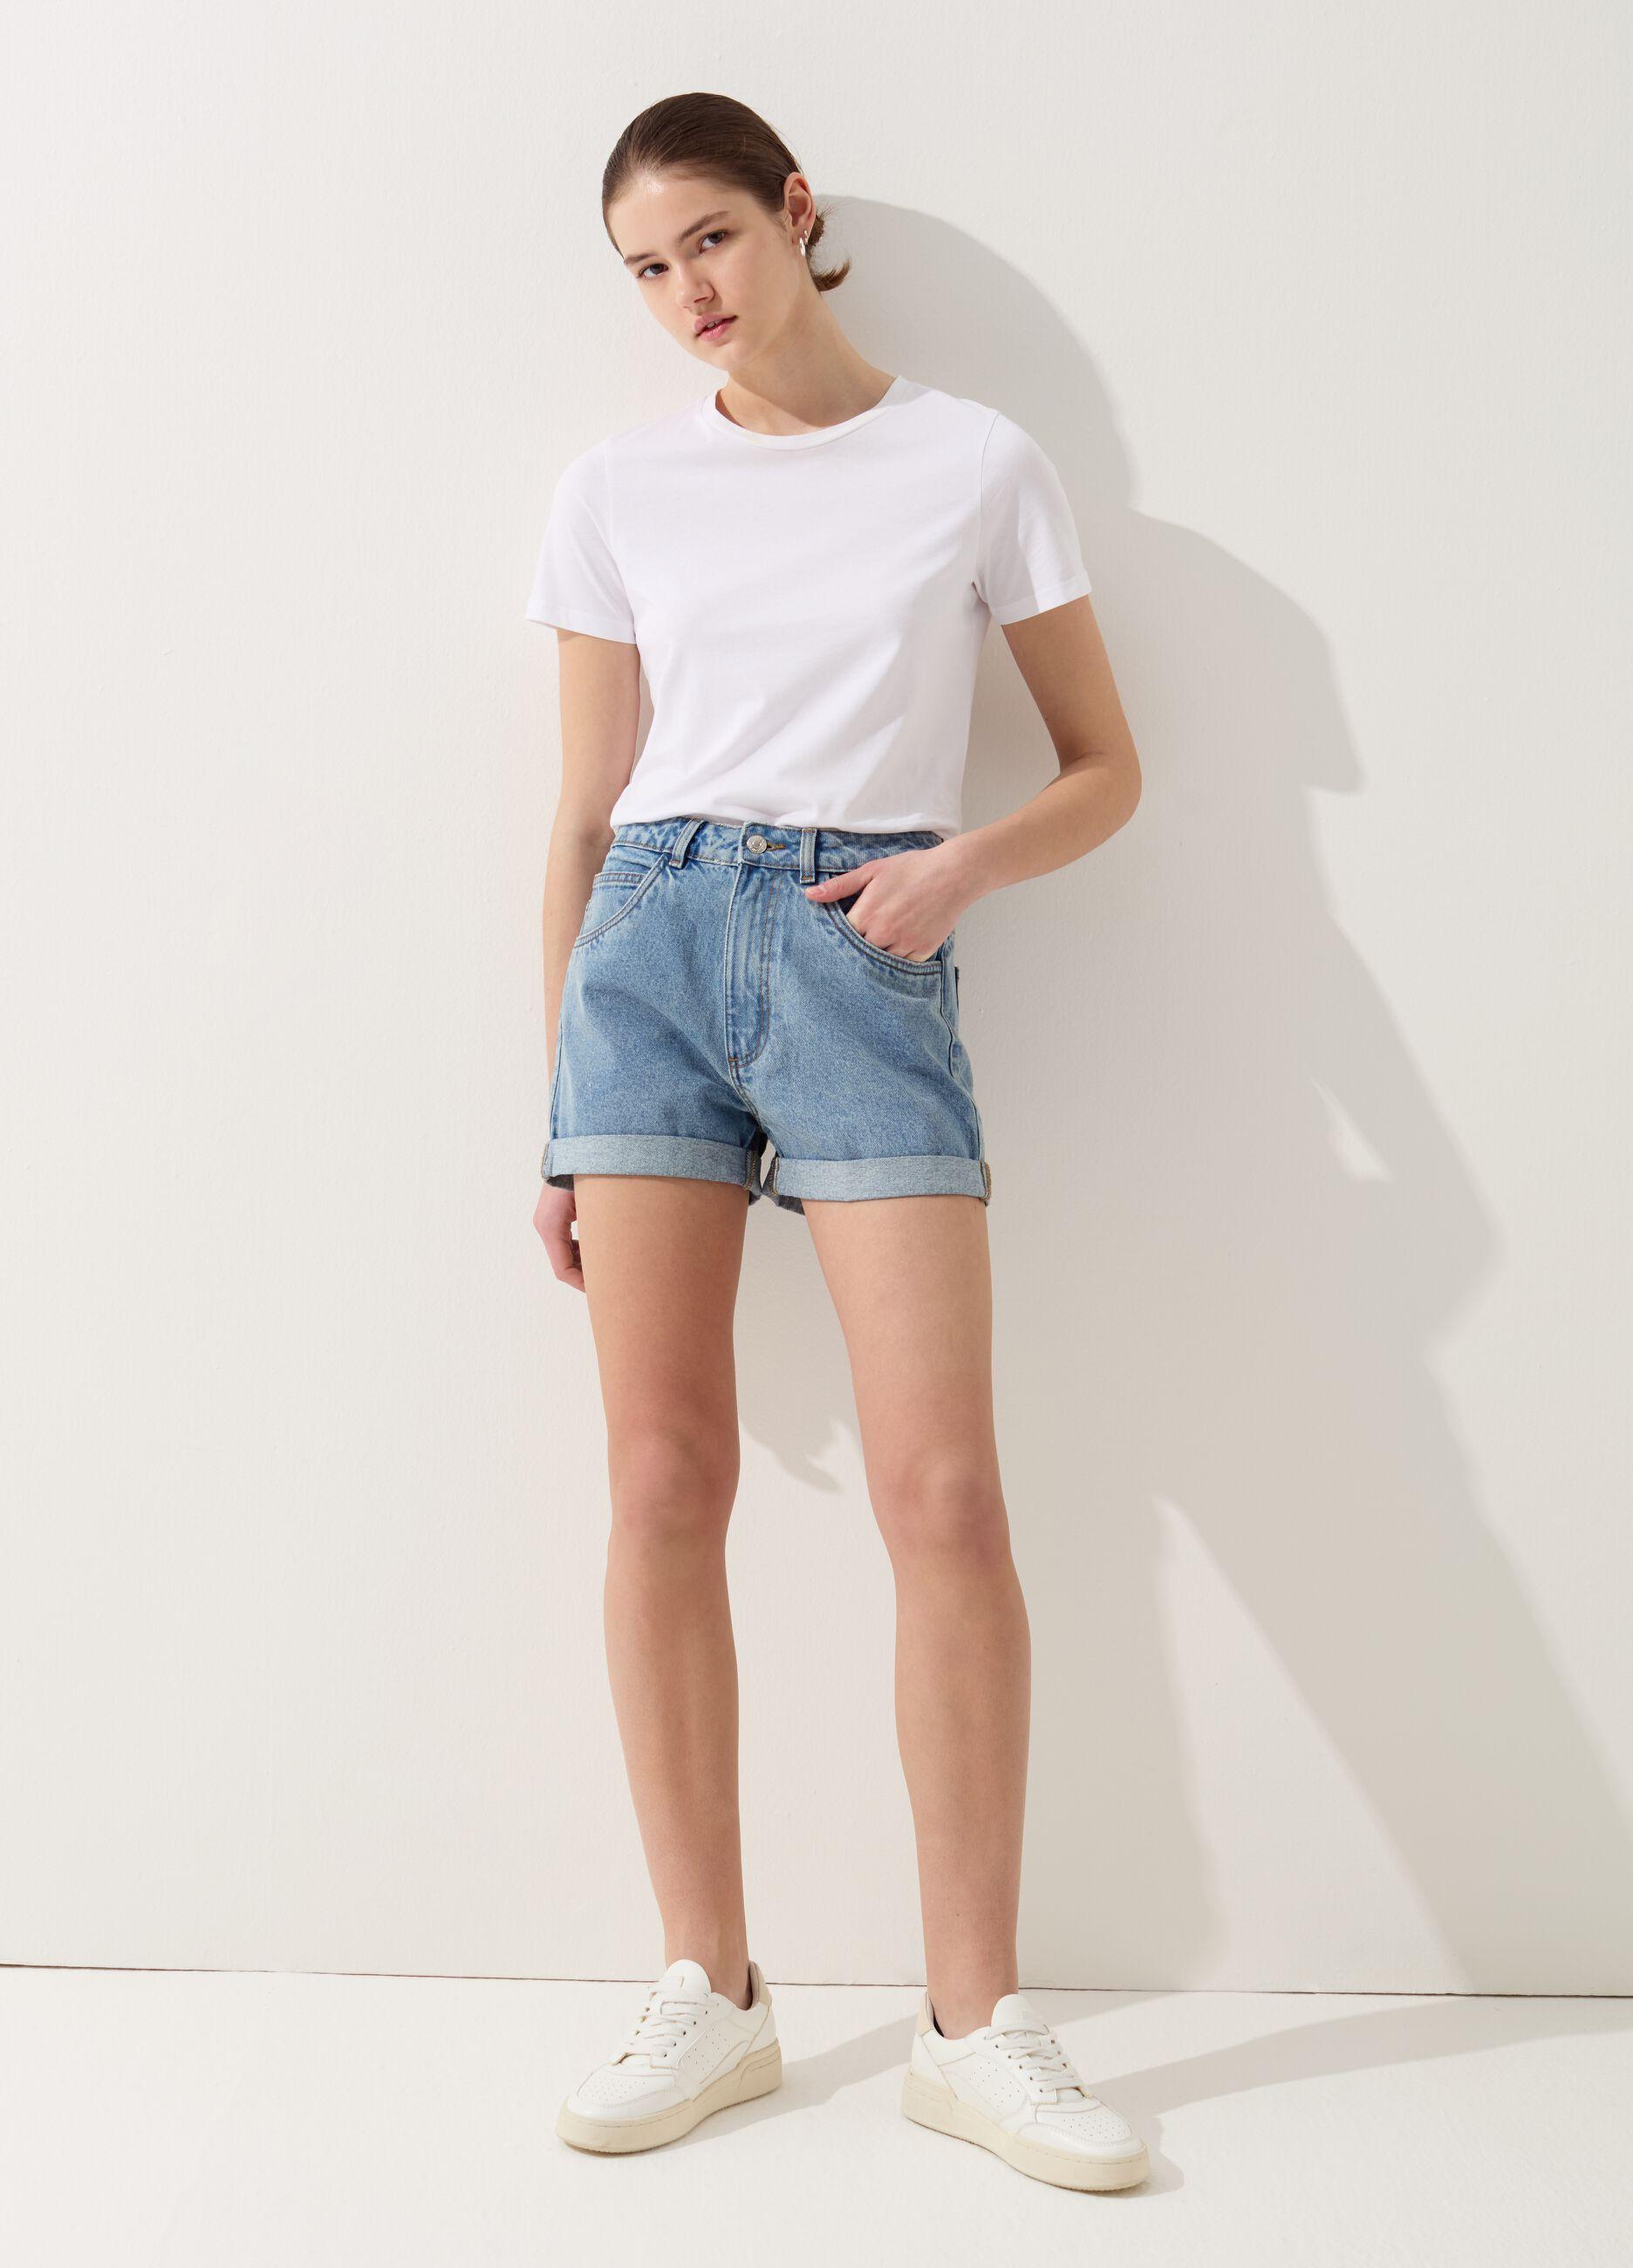 Mum-fit shorts in denim